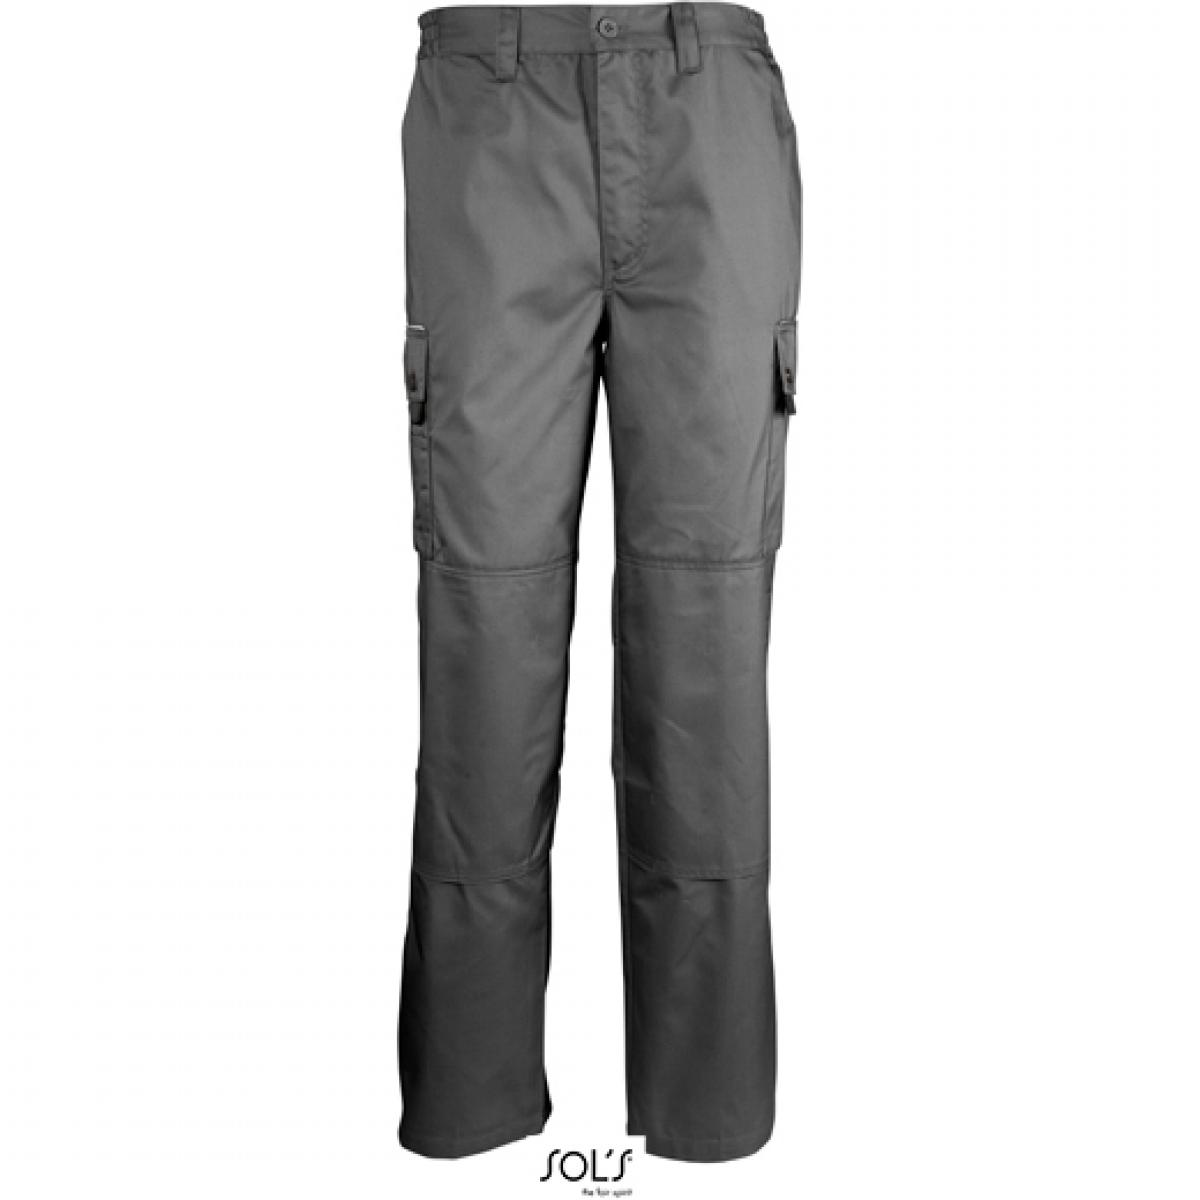 Hersteller: SOLs ProWear Herstellernummer: 80600 Artikelbezeichnung: Herren Workwear Trousers Active Pro / Waschbar bis 60 °C Farbe: Dark Grey (Solid)